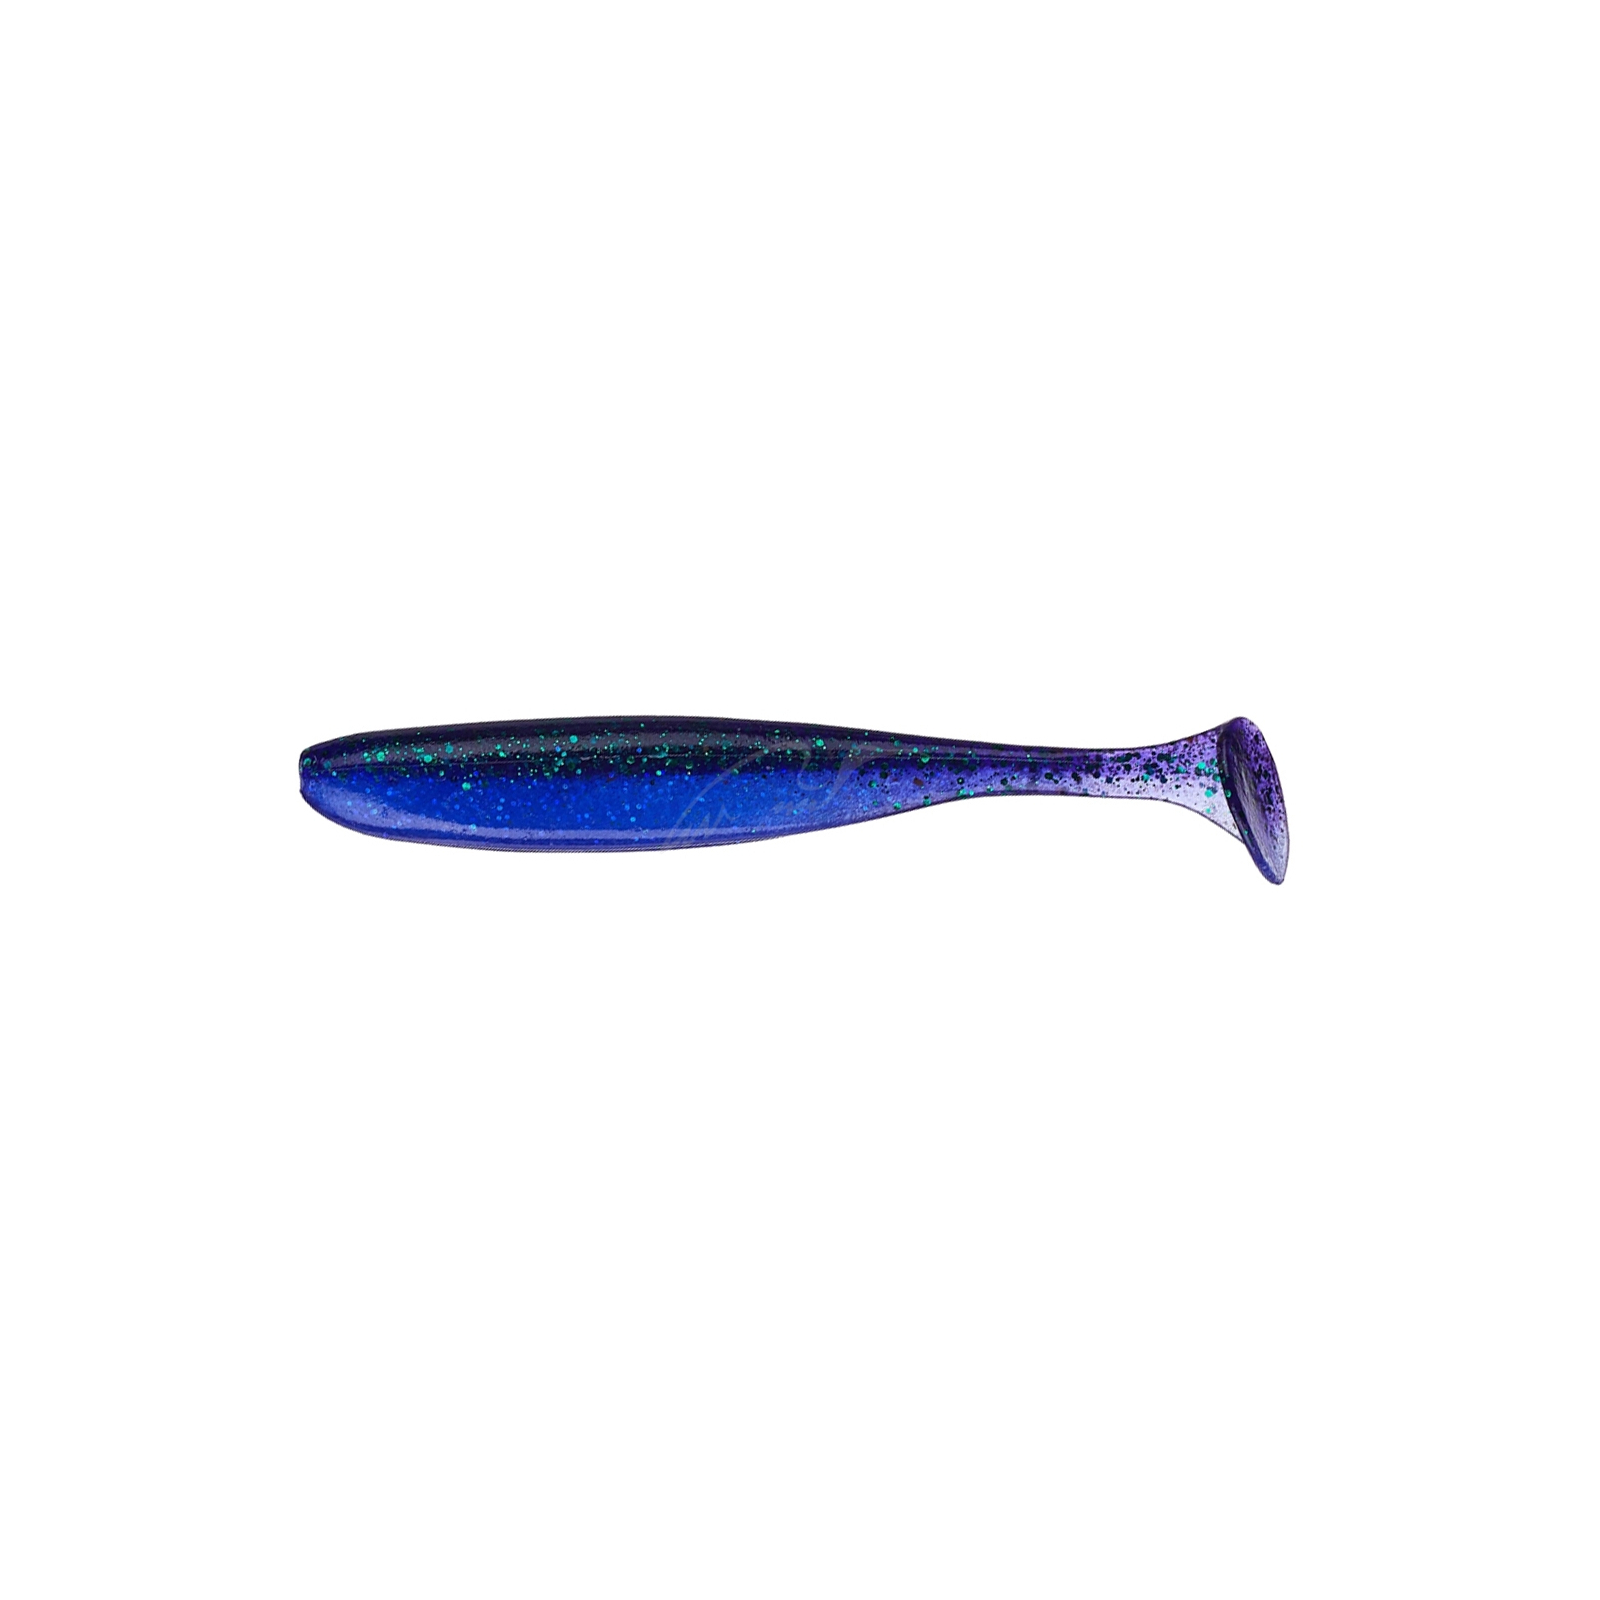 Силикон рыболовный Keitech Easy Shiner 6.5" (3 шт/упак) ц:408 electric june bug (1551.10.89)